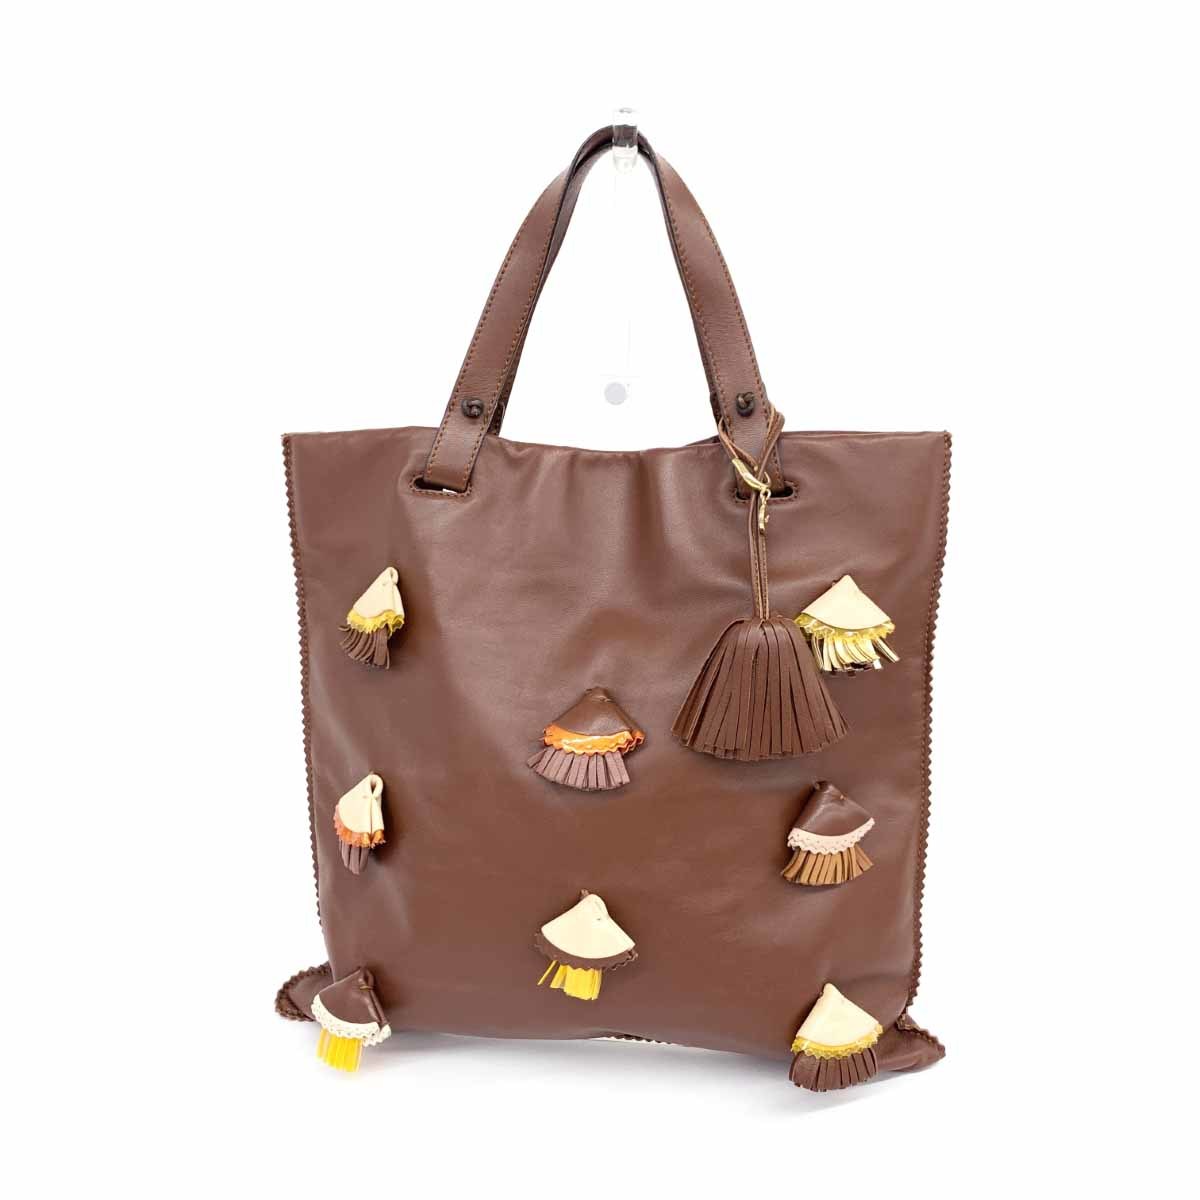 良好◆LOEWE ロエベ ハンドバッグ◆ ブラウン ナッパレザー レディース bag 鞄